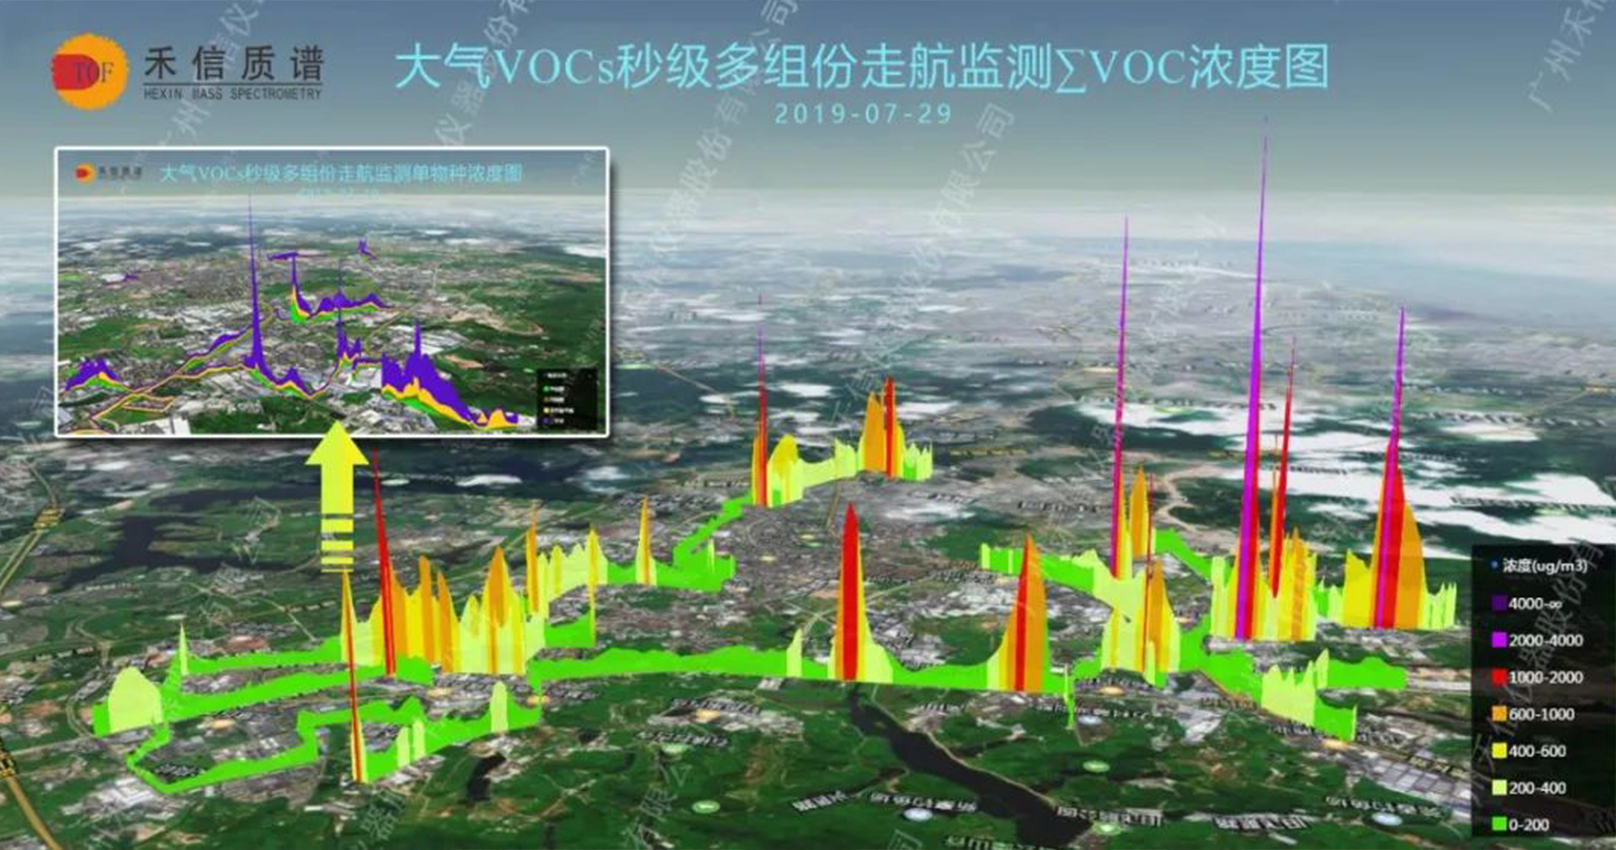 [ 污染画像 ]VOCs精准管控方案